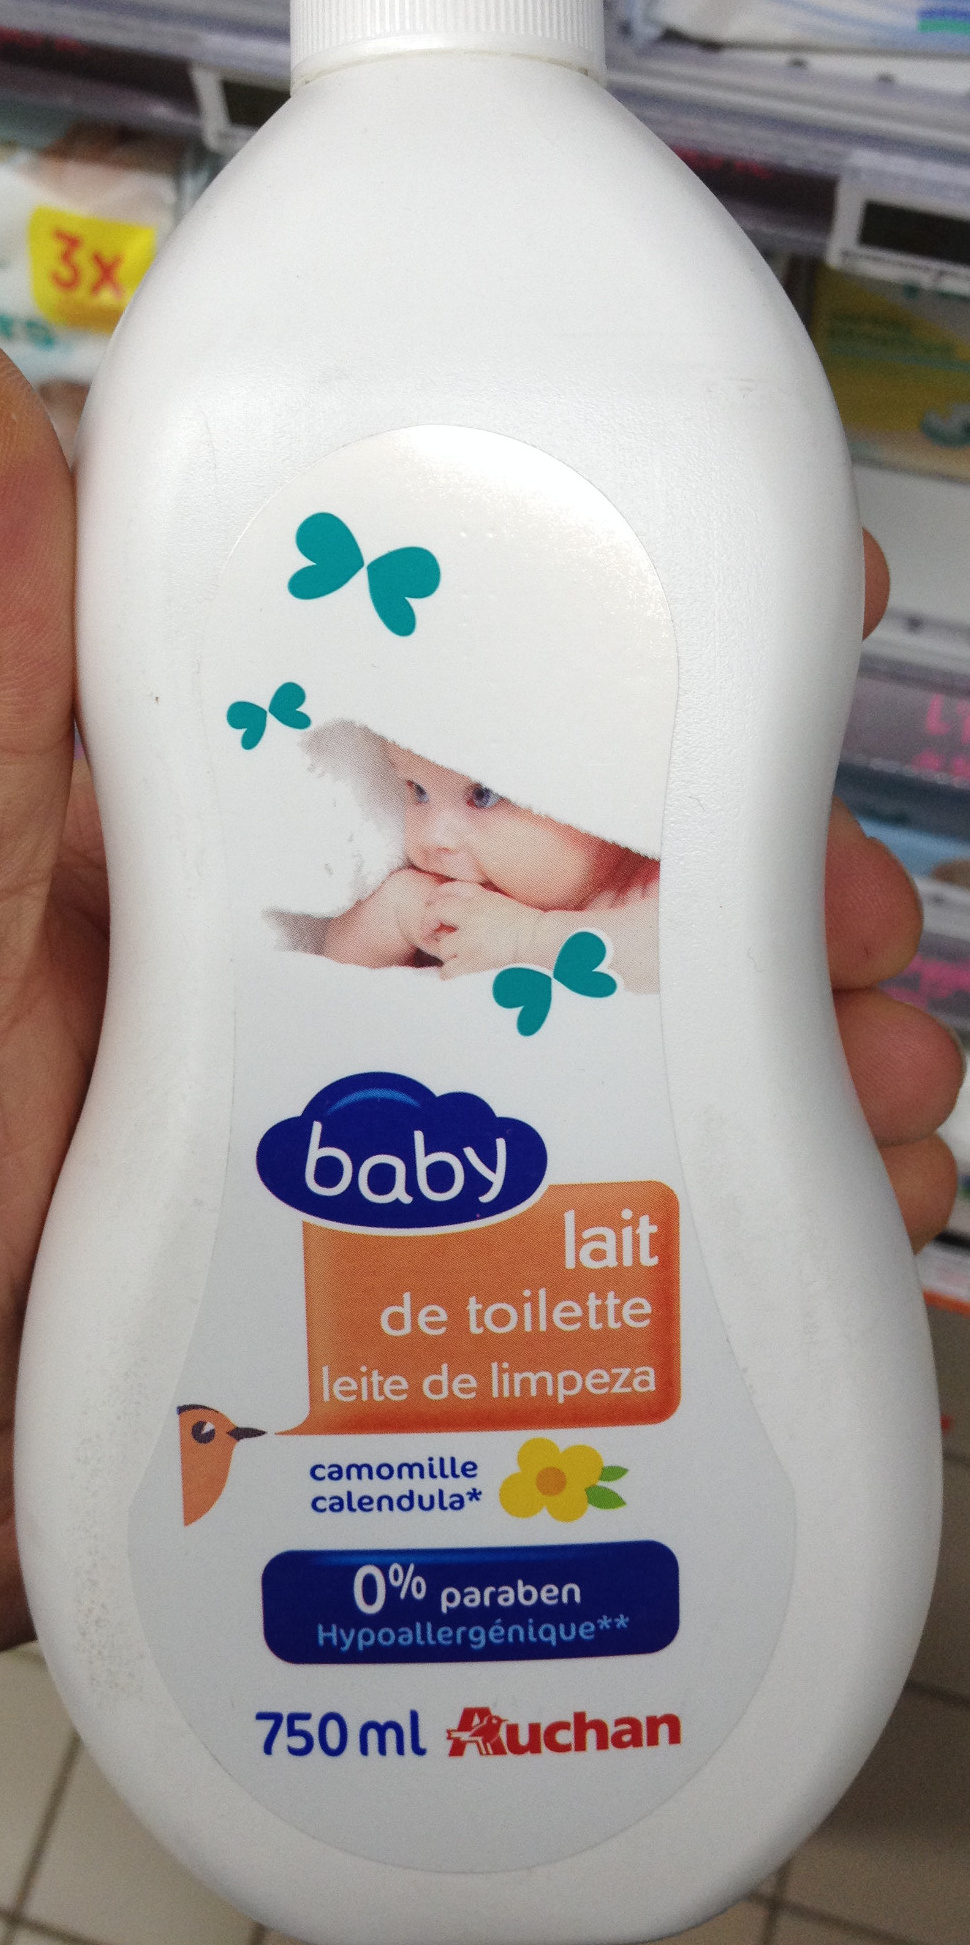 Lait de toilette baby camomille - Produit - fr